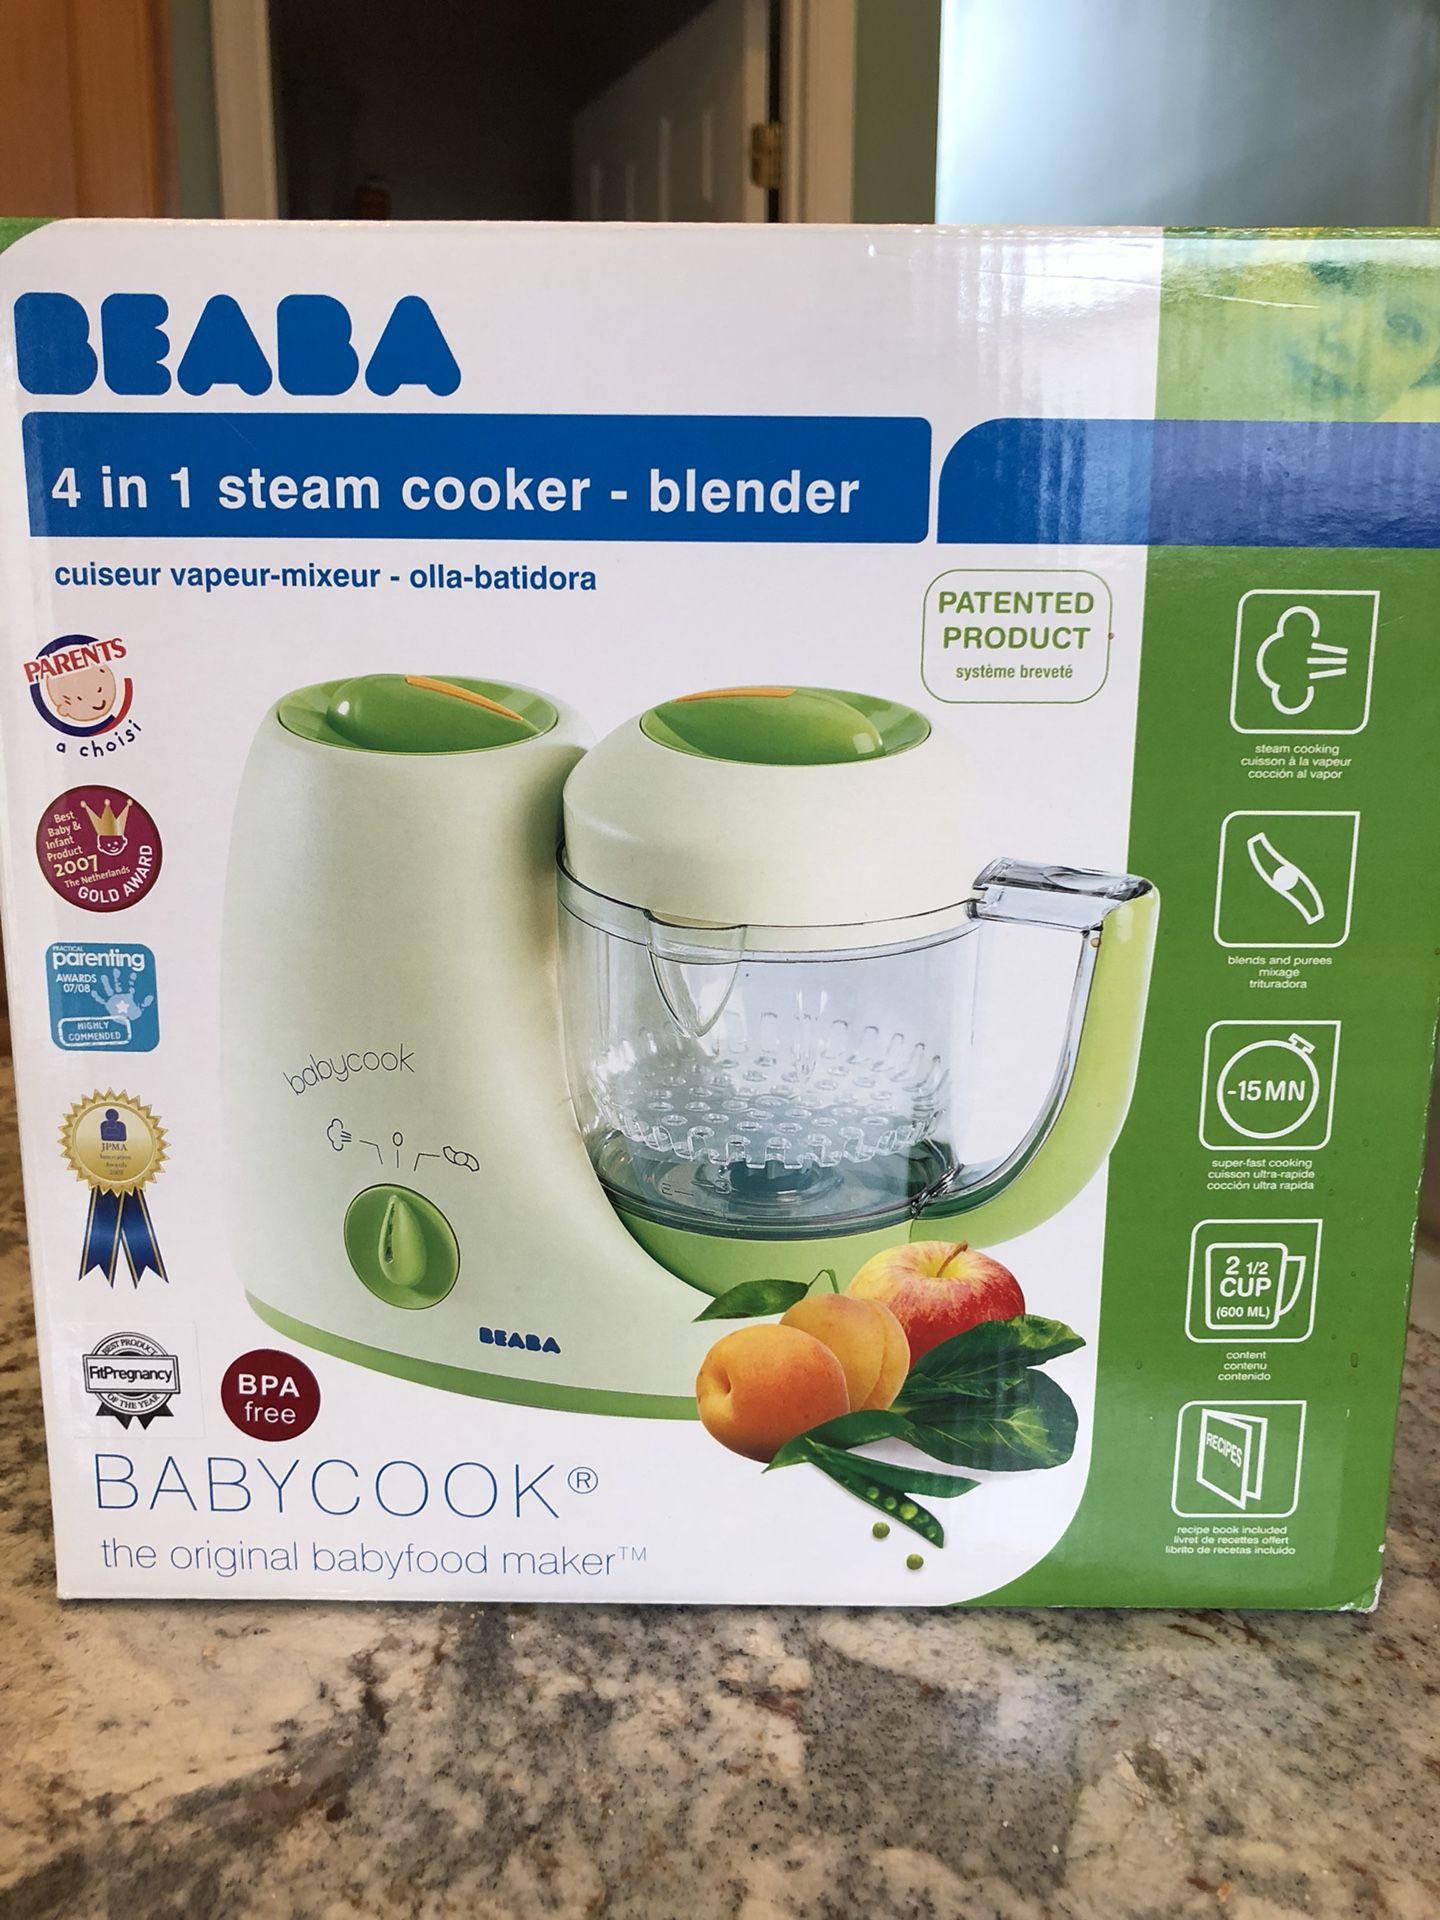 NEW- Beaba Babycook Steamer Blender - NEW